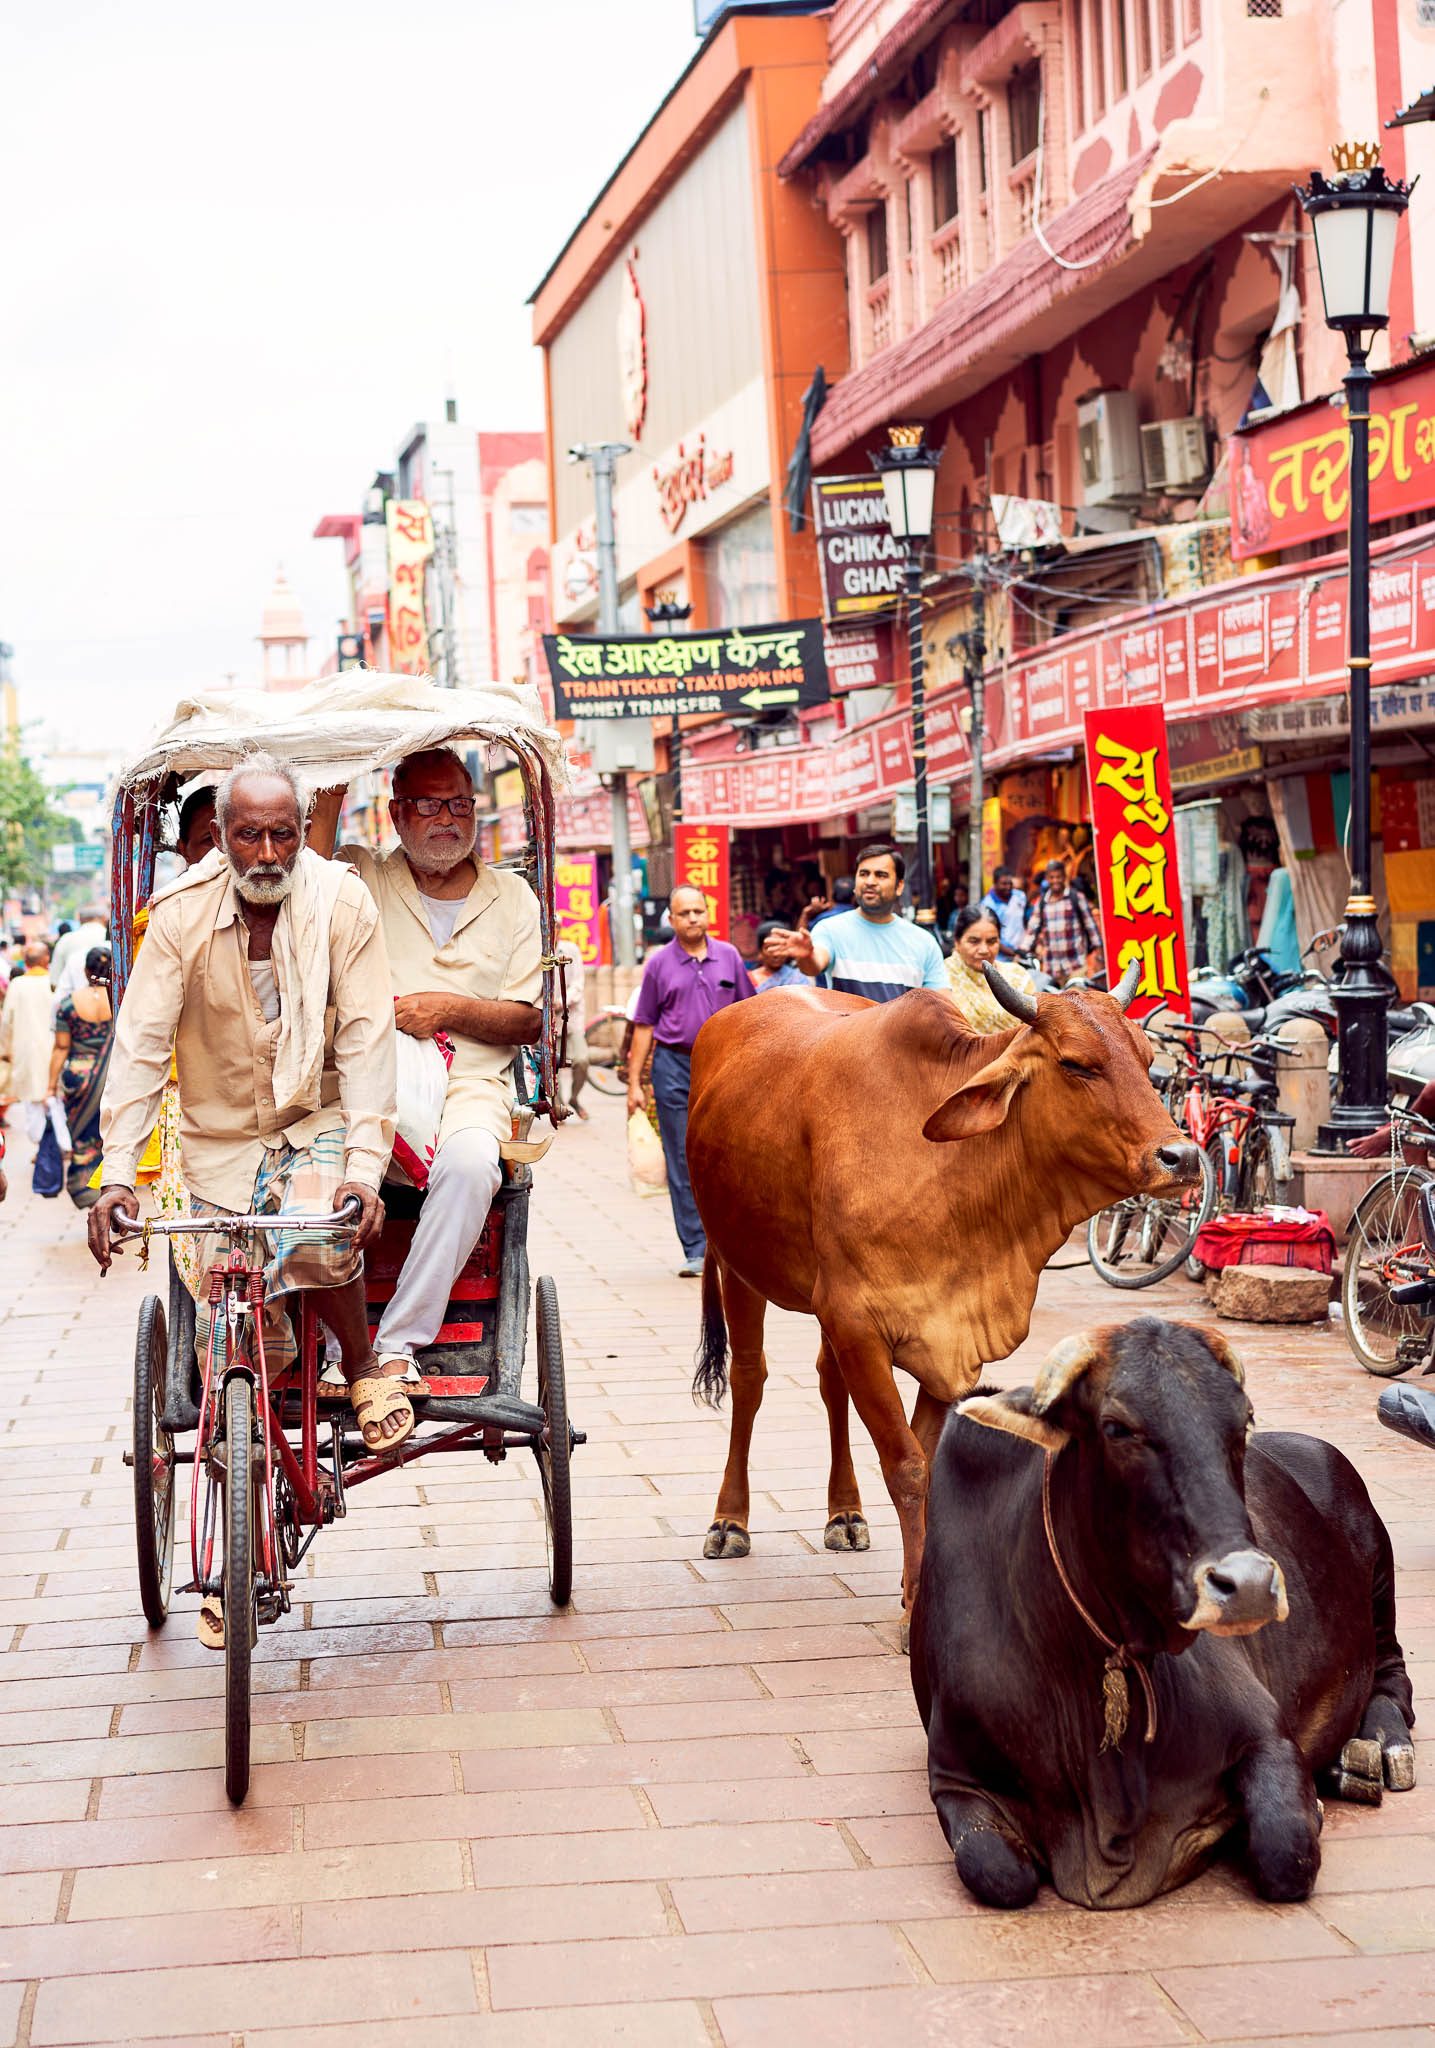 A cycle rickshaw passing by the cows in the street, Varanasi, Uttar Pradesh,  India